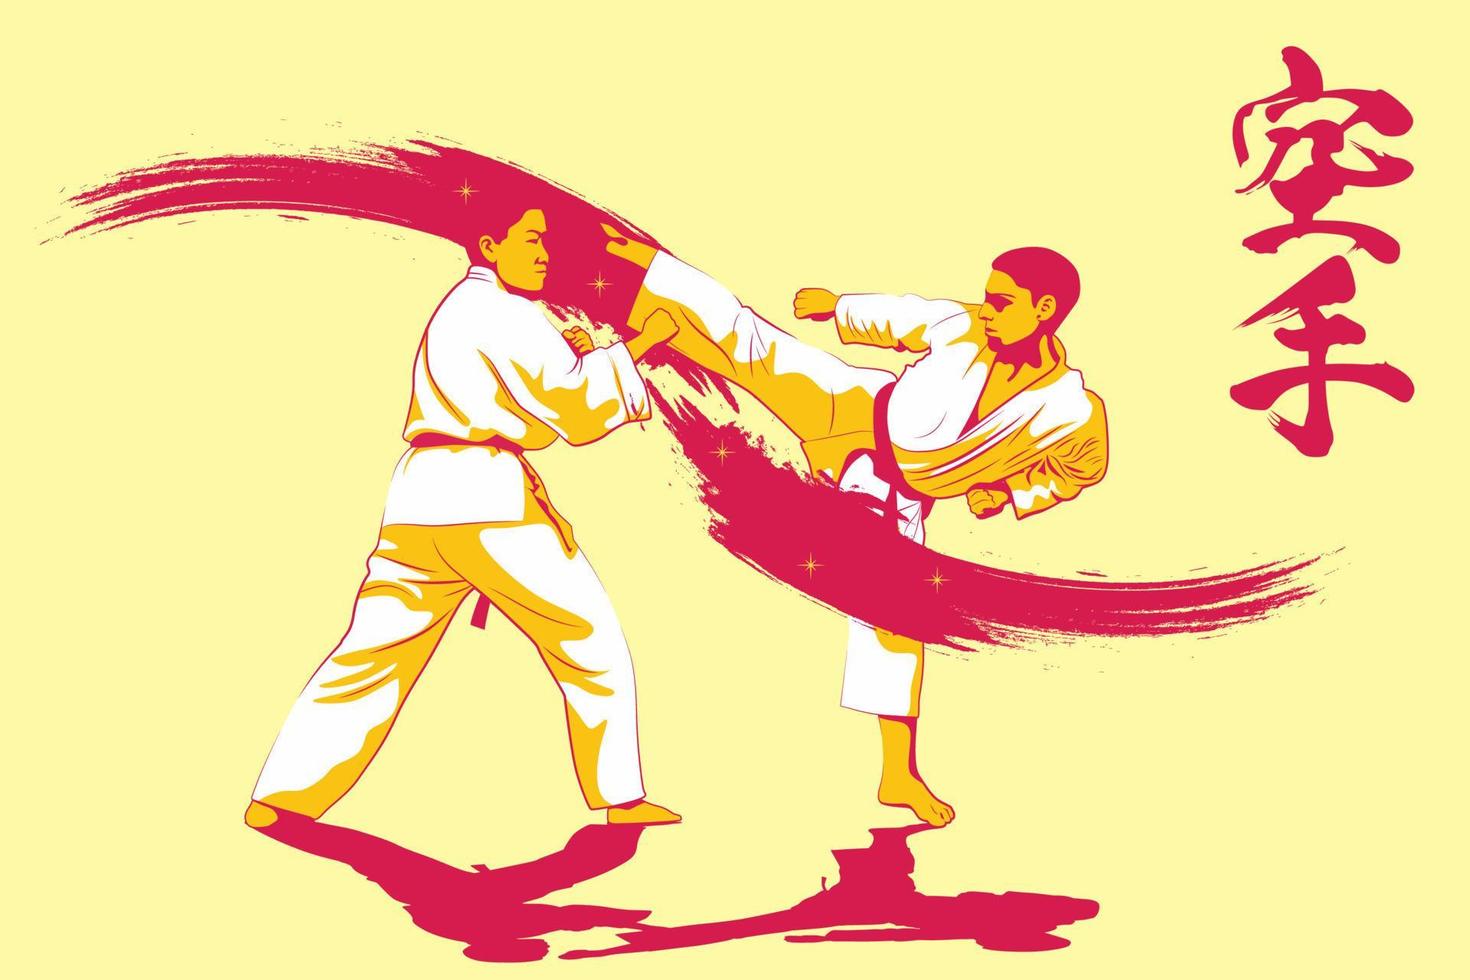 karate är en krigisk konst ursprung från japan. vektor illustratör.